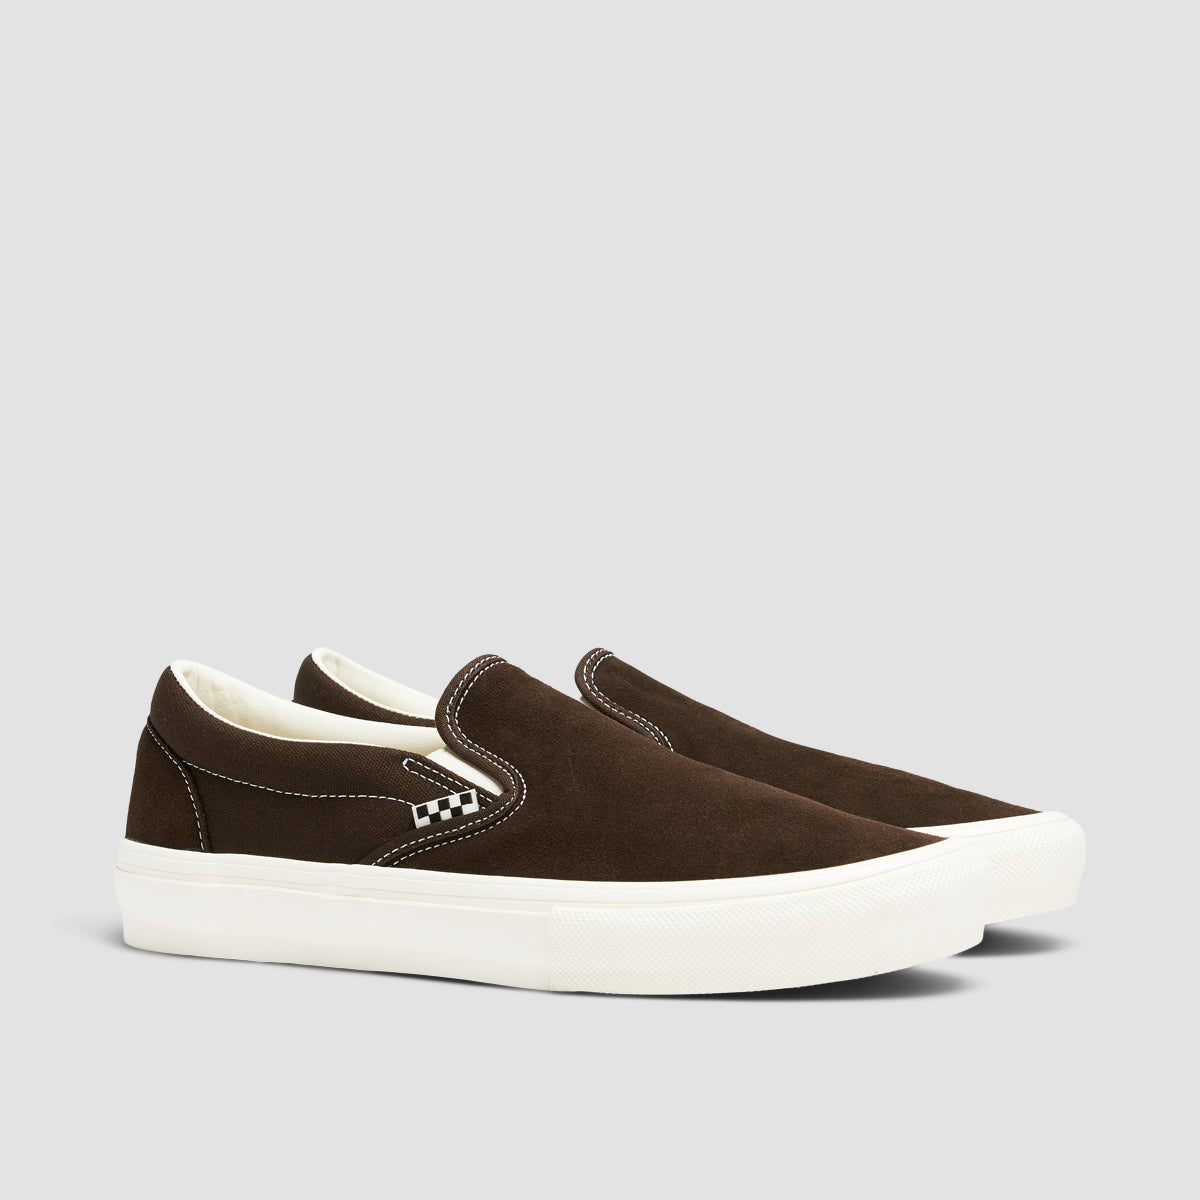 Vans Skate Slip-On Shoes - Chocolate Brown